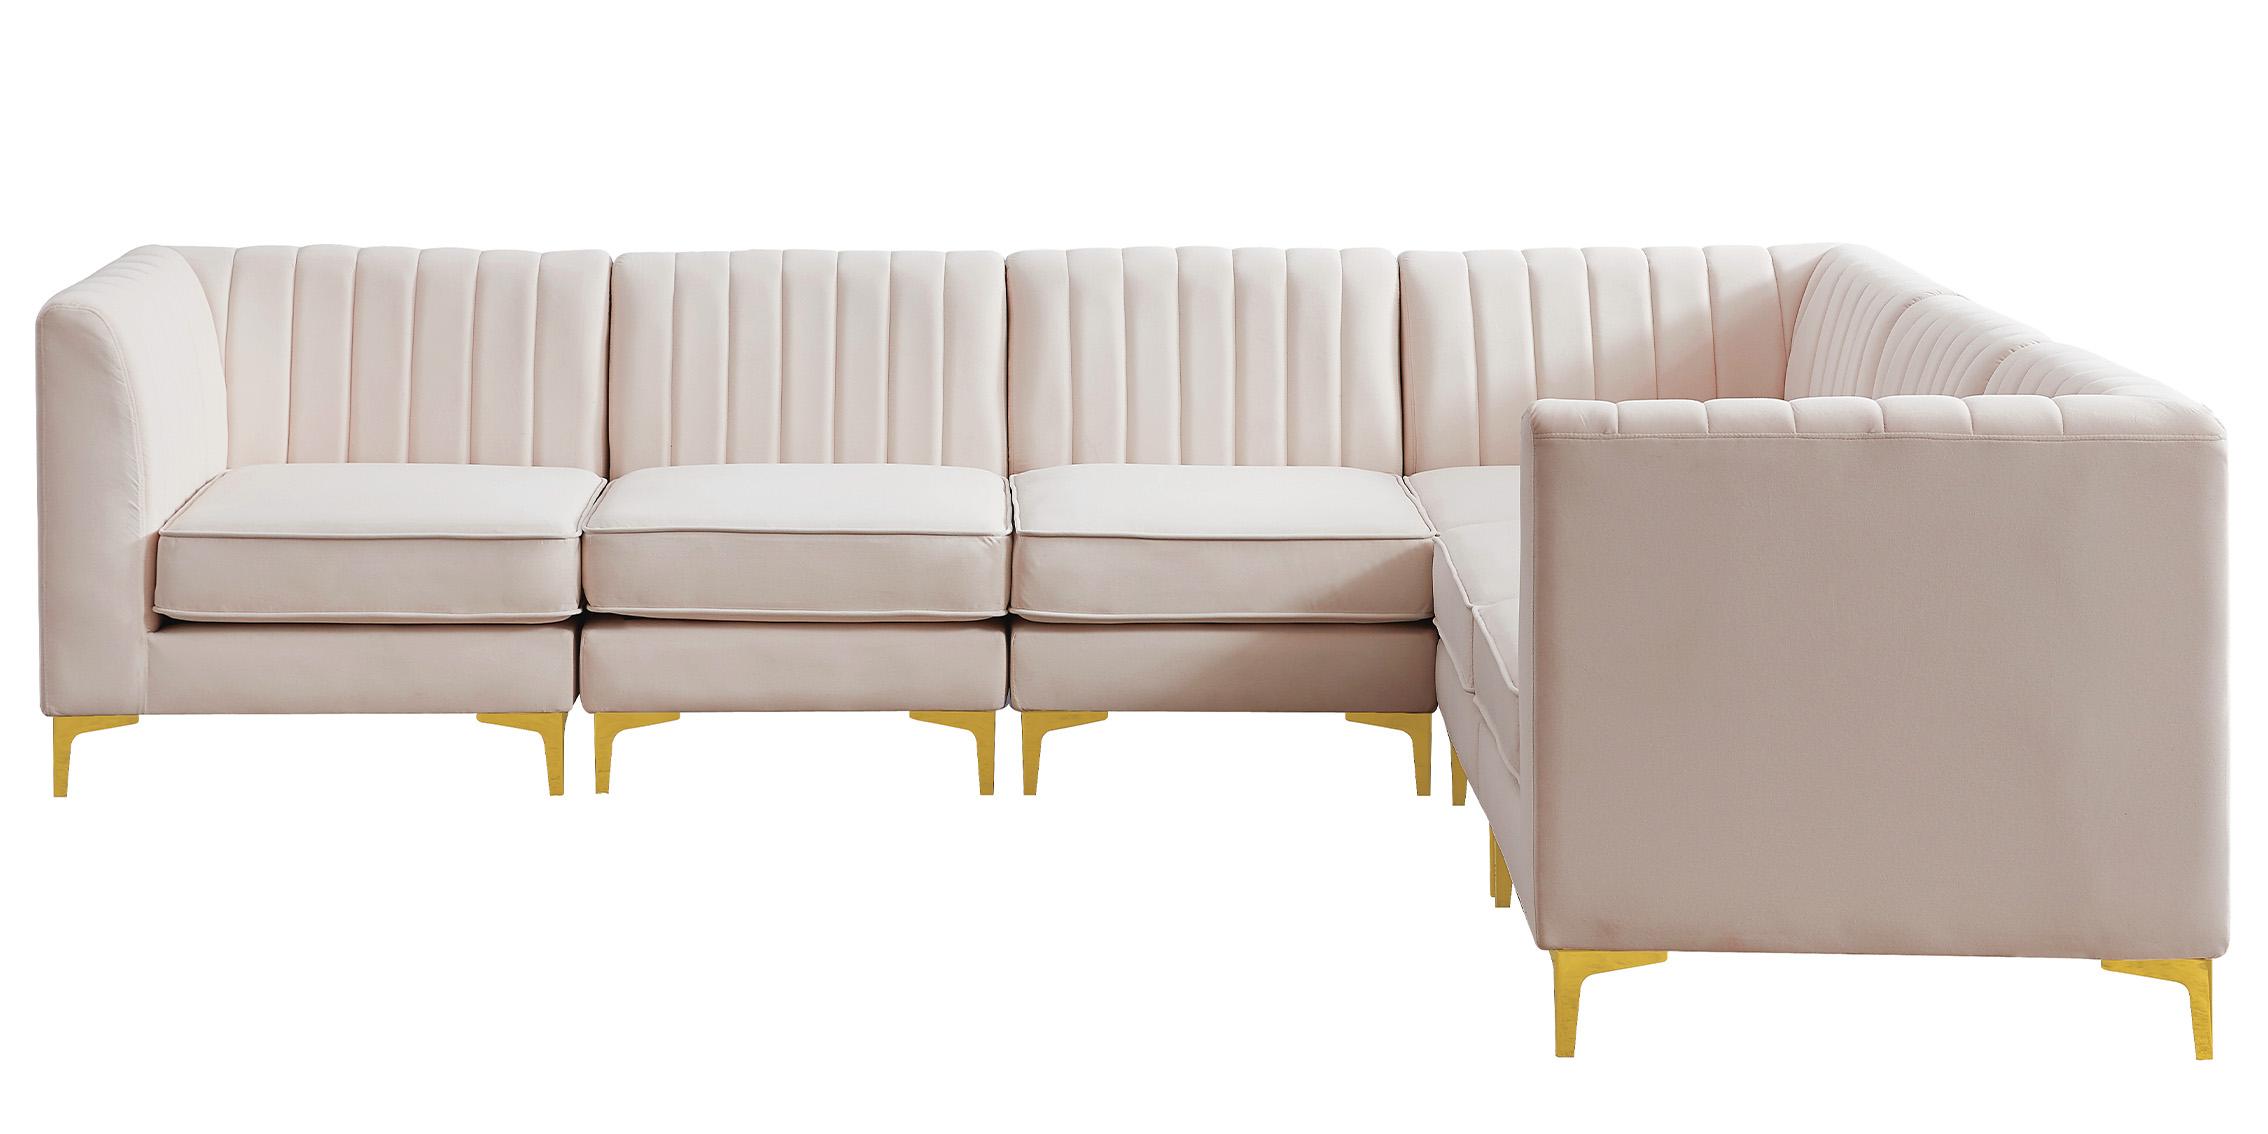 

    
604Pink-Sec6A Meridian Furniture Modular Sectional Sofa
